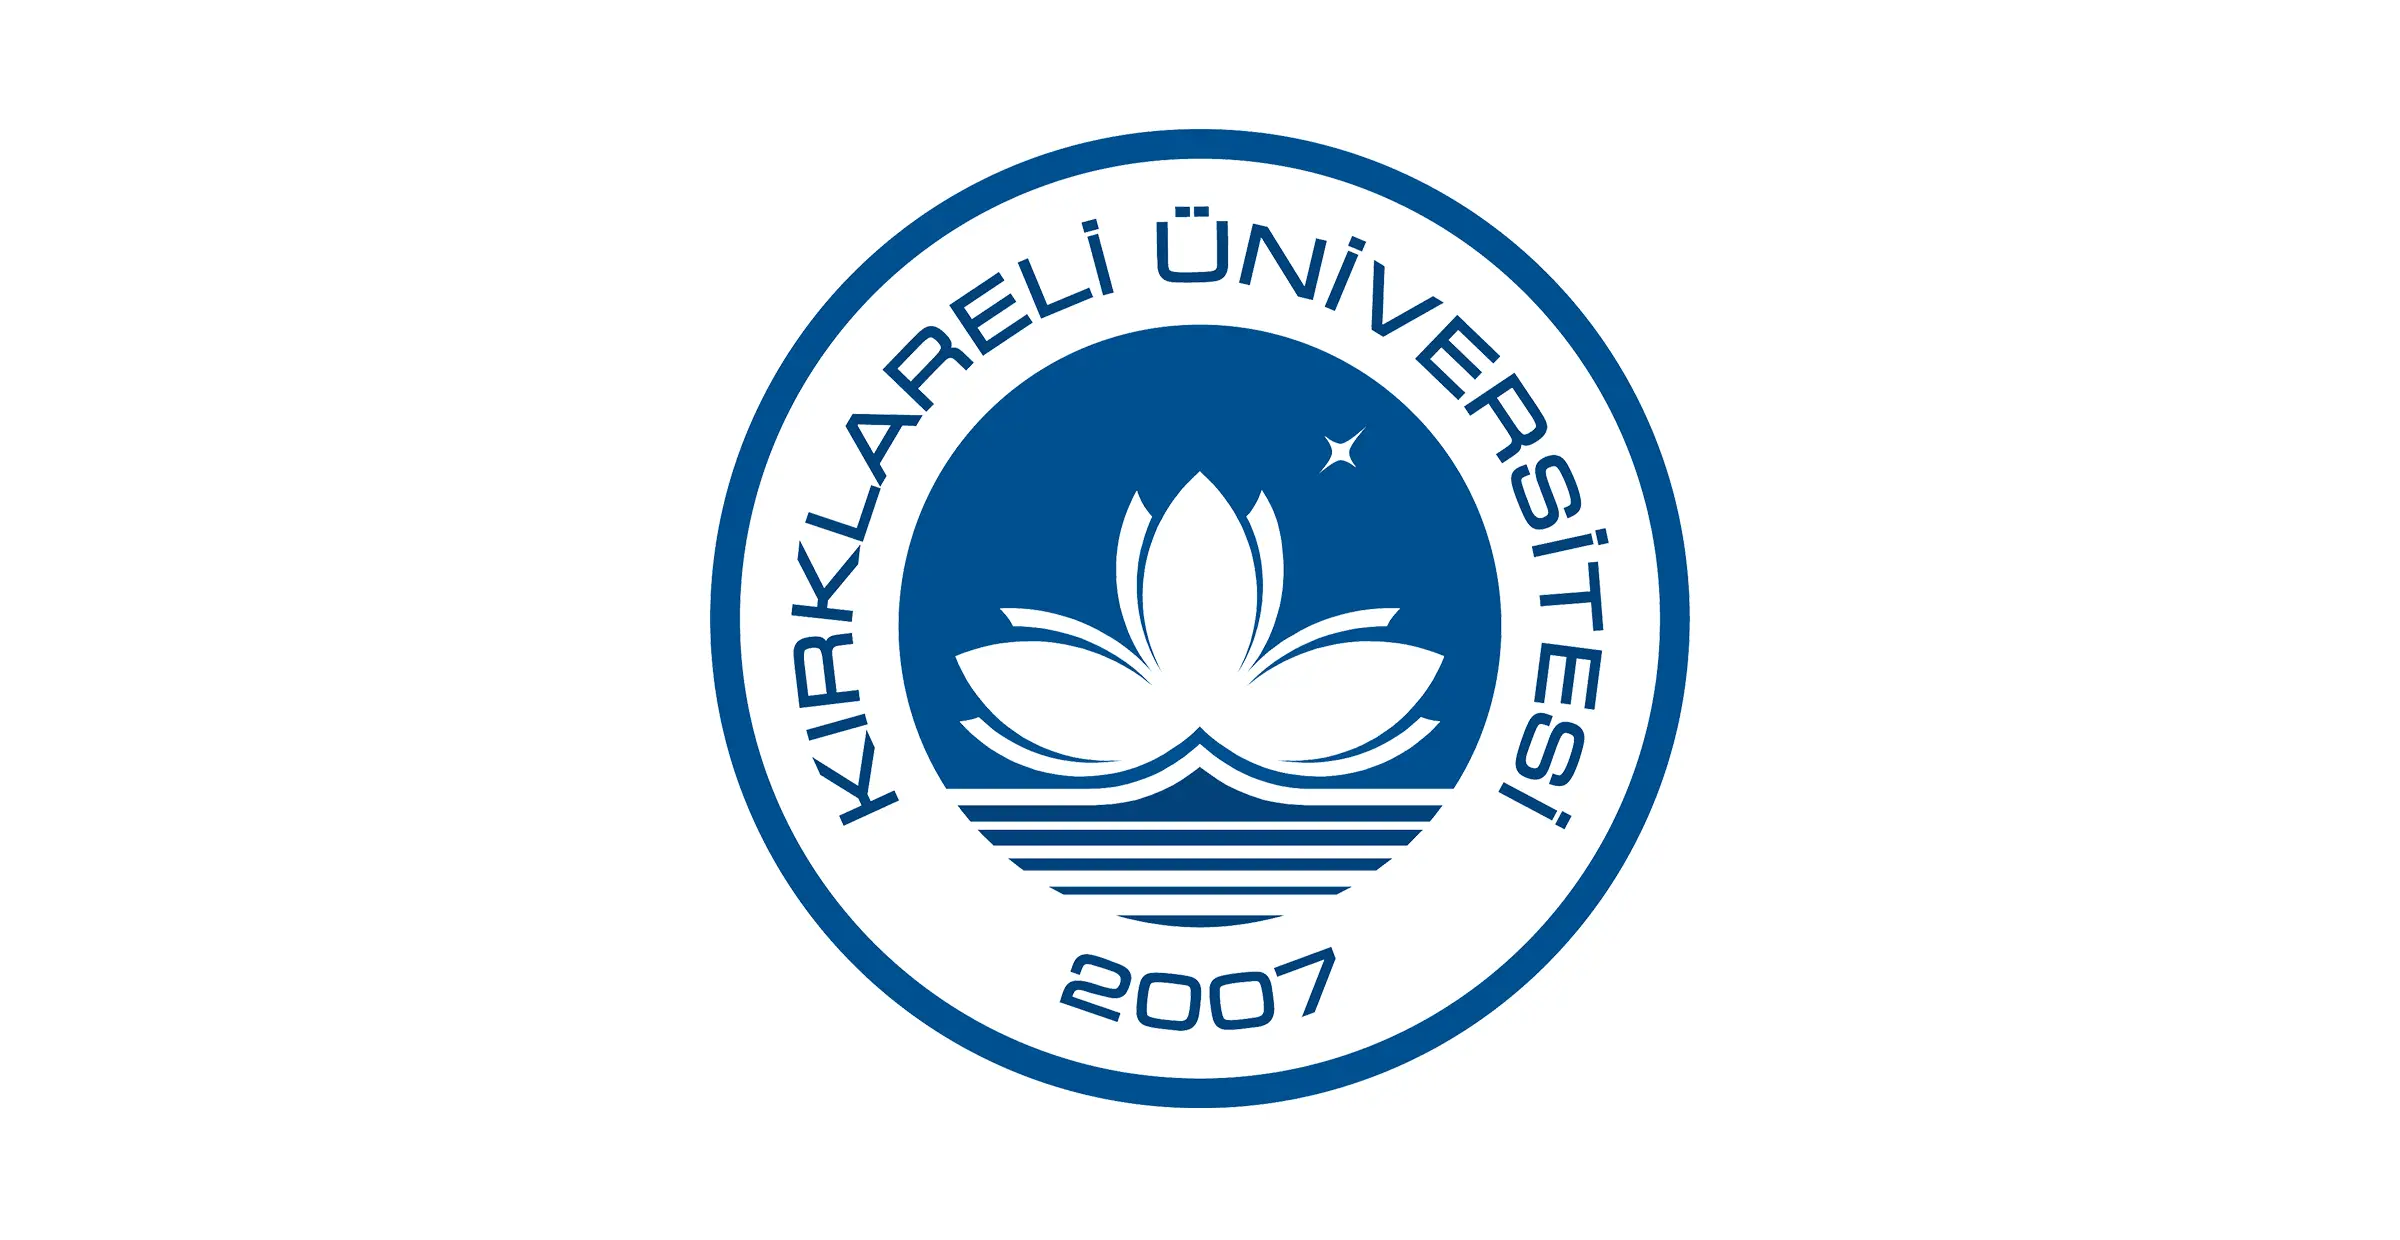 تأسست جامعة كيركلارالي Kırklareli Üniversitesi في عام2007. وتواصل أنشطتها التعليمية والبحثية مع 12 كلية ، و 2 معهد عالي ، و 7 معاهد مهني